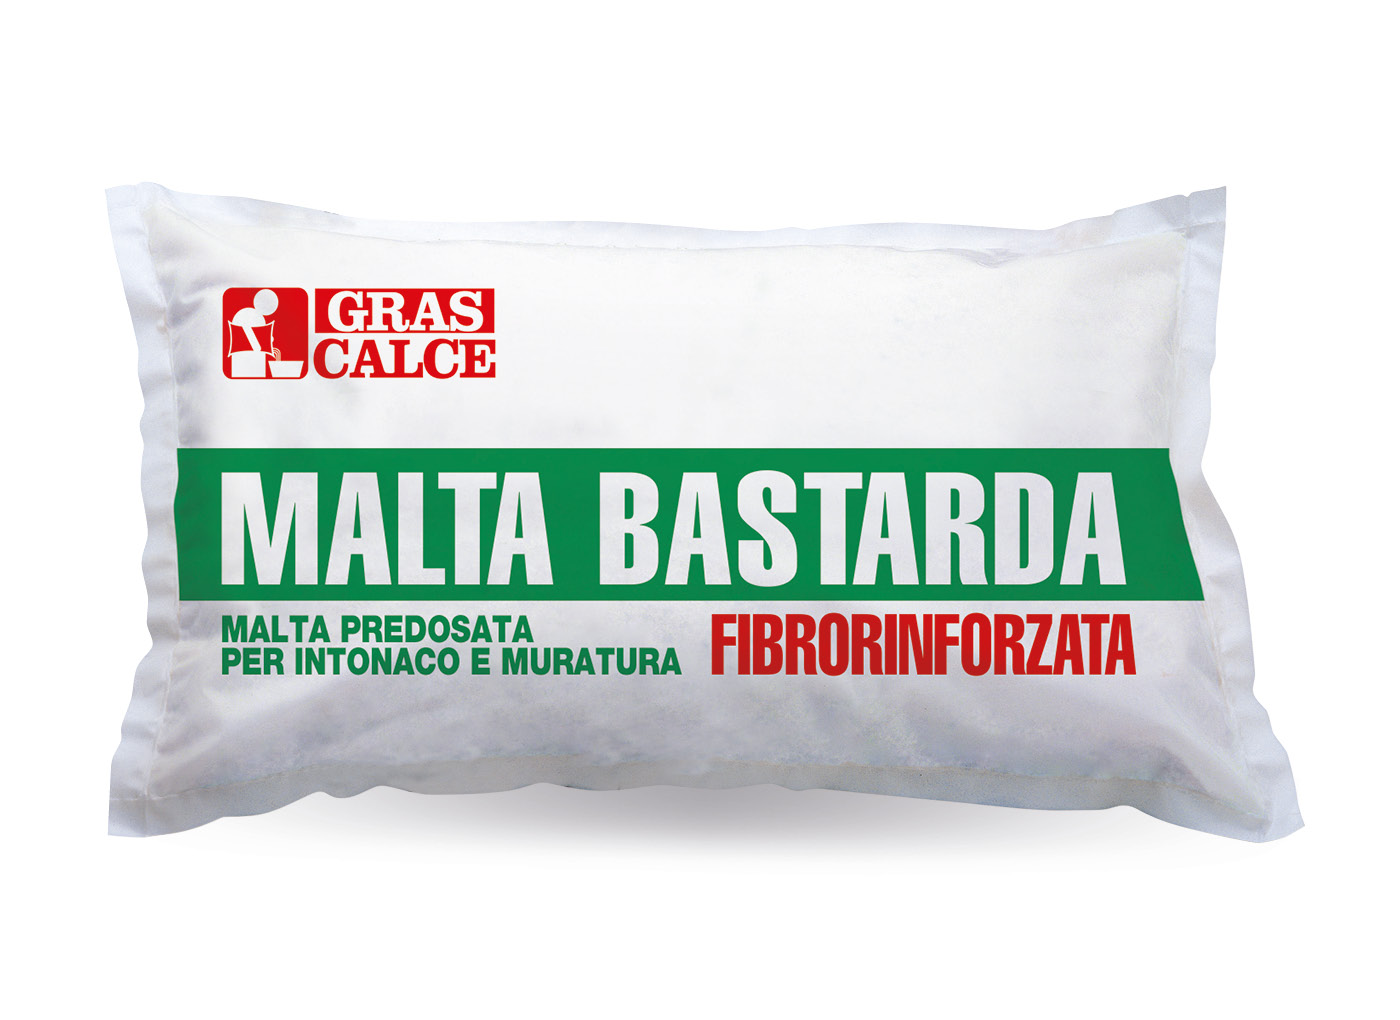 Malta Bastarda Fibrorinforzata: mort za žbukanje i zidanje